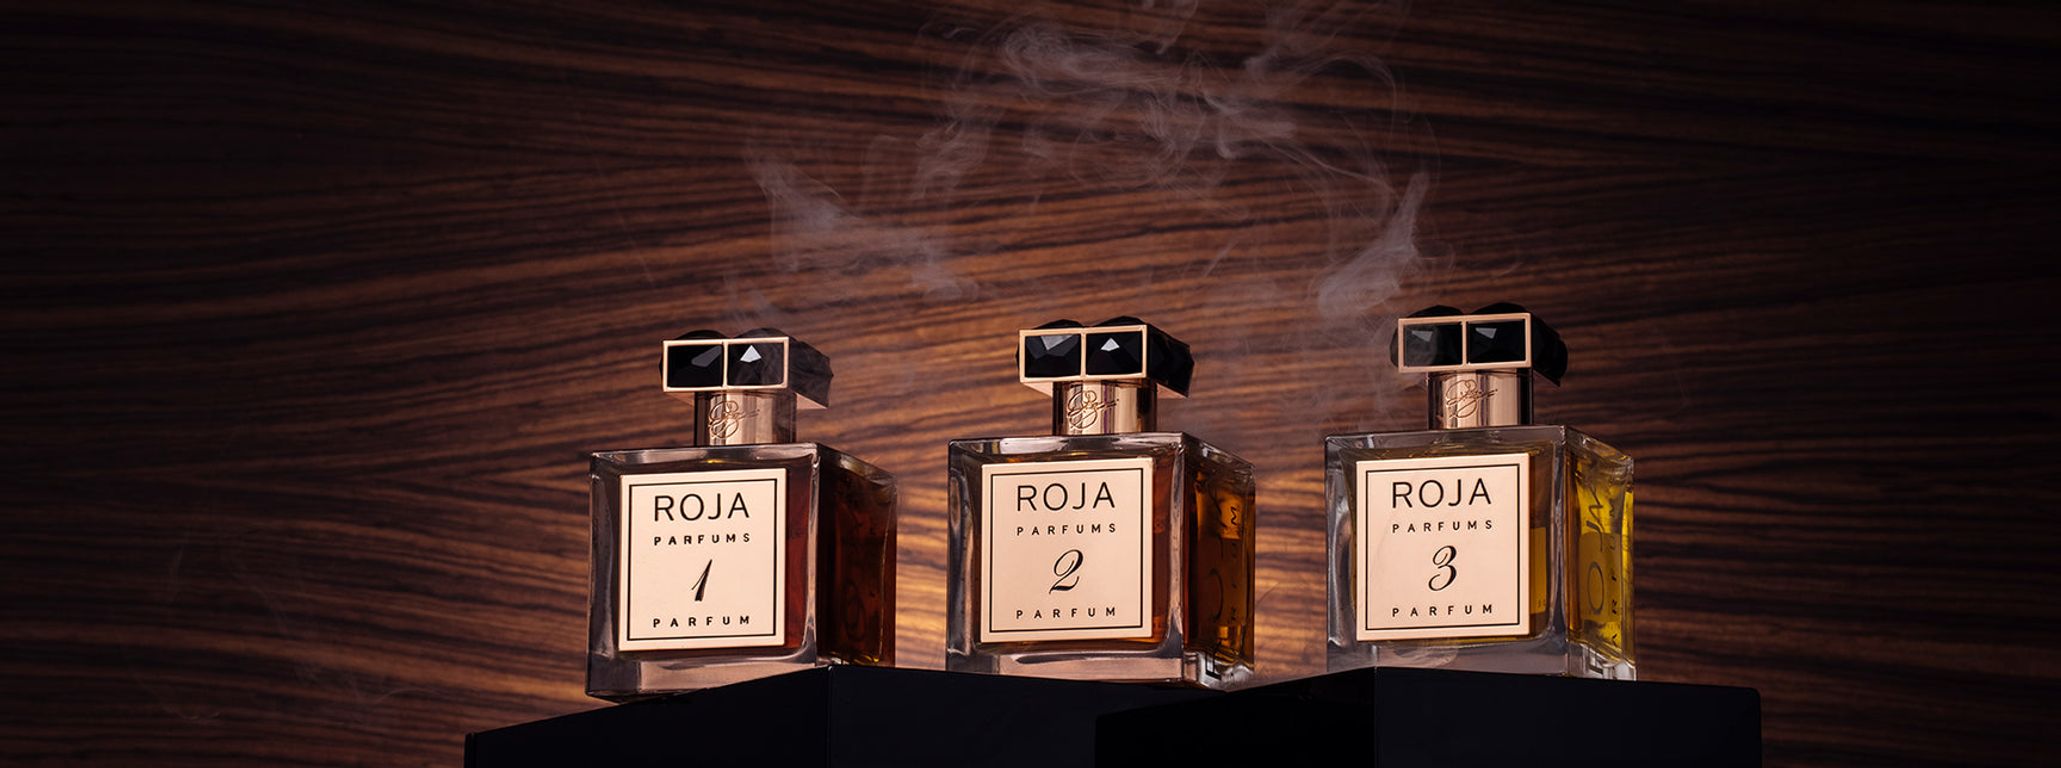 Roja Dove De La Nuit 3 Extrait de Parfum